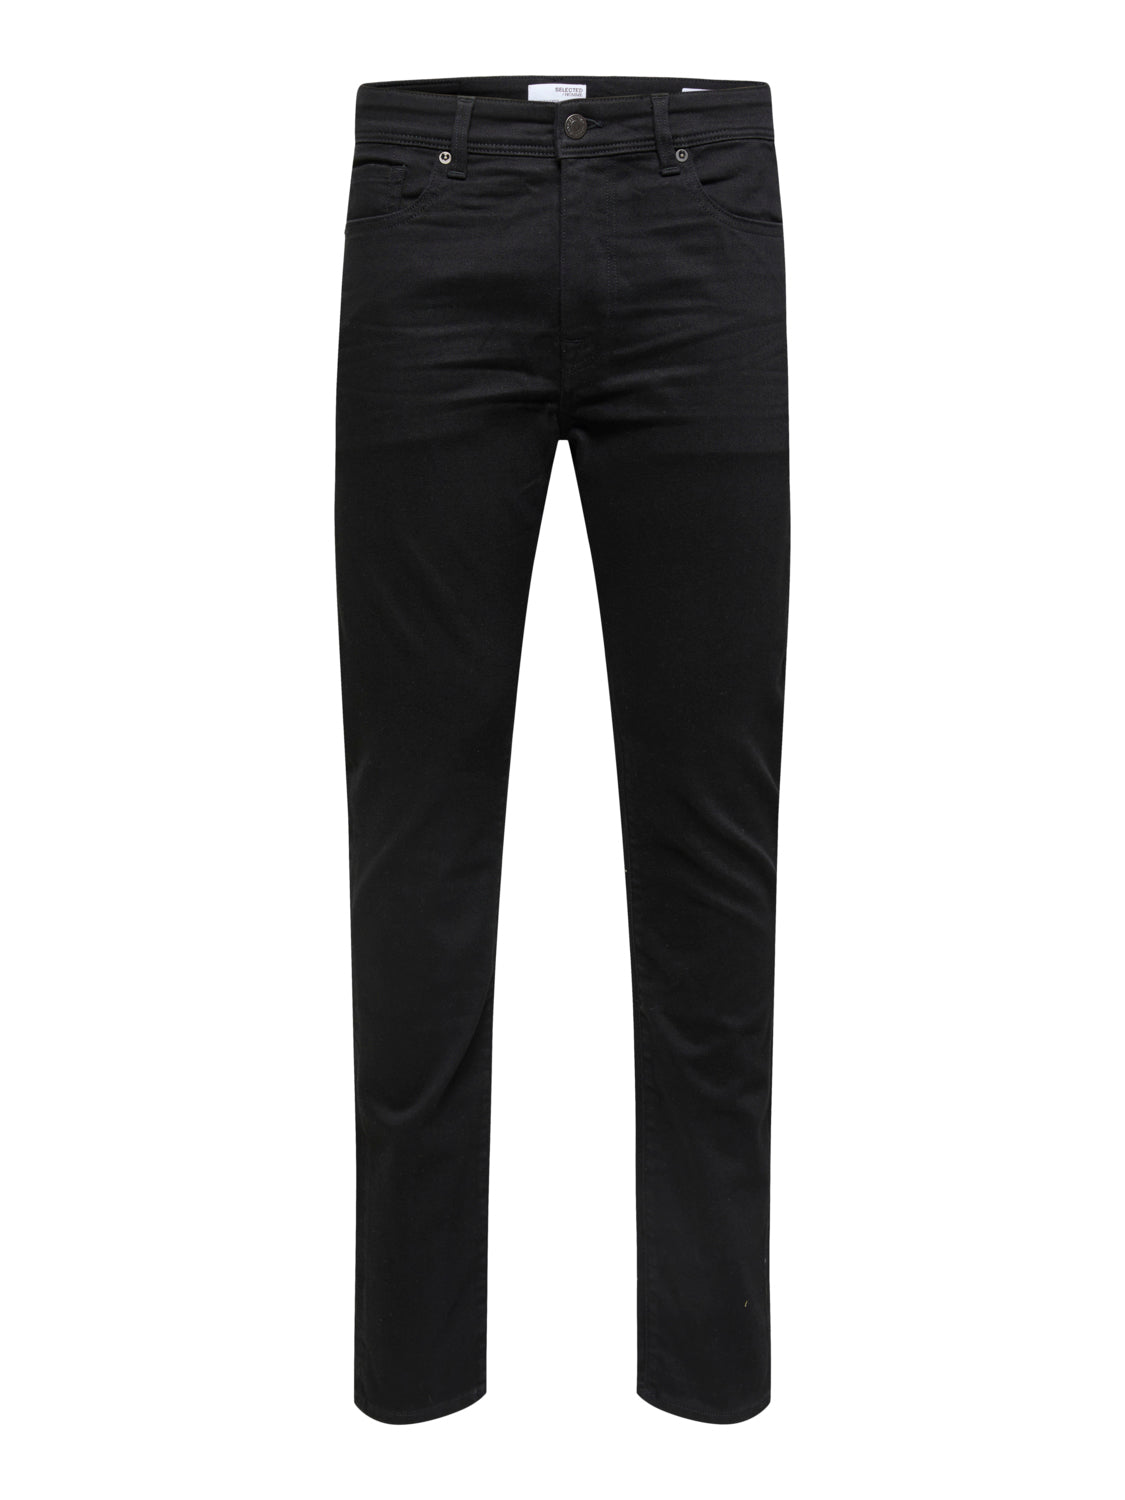 SLH175-SLIM Jeans - Black Denim